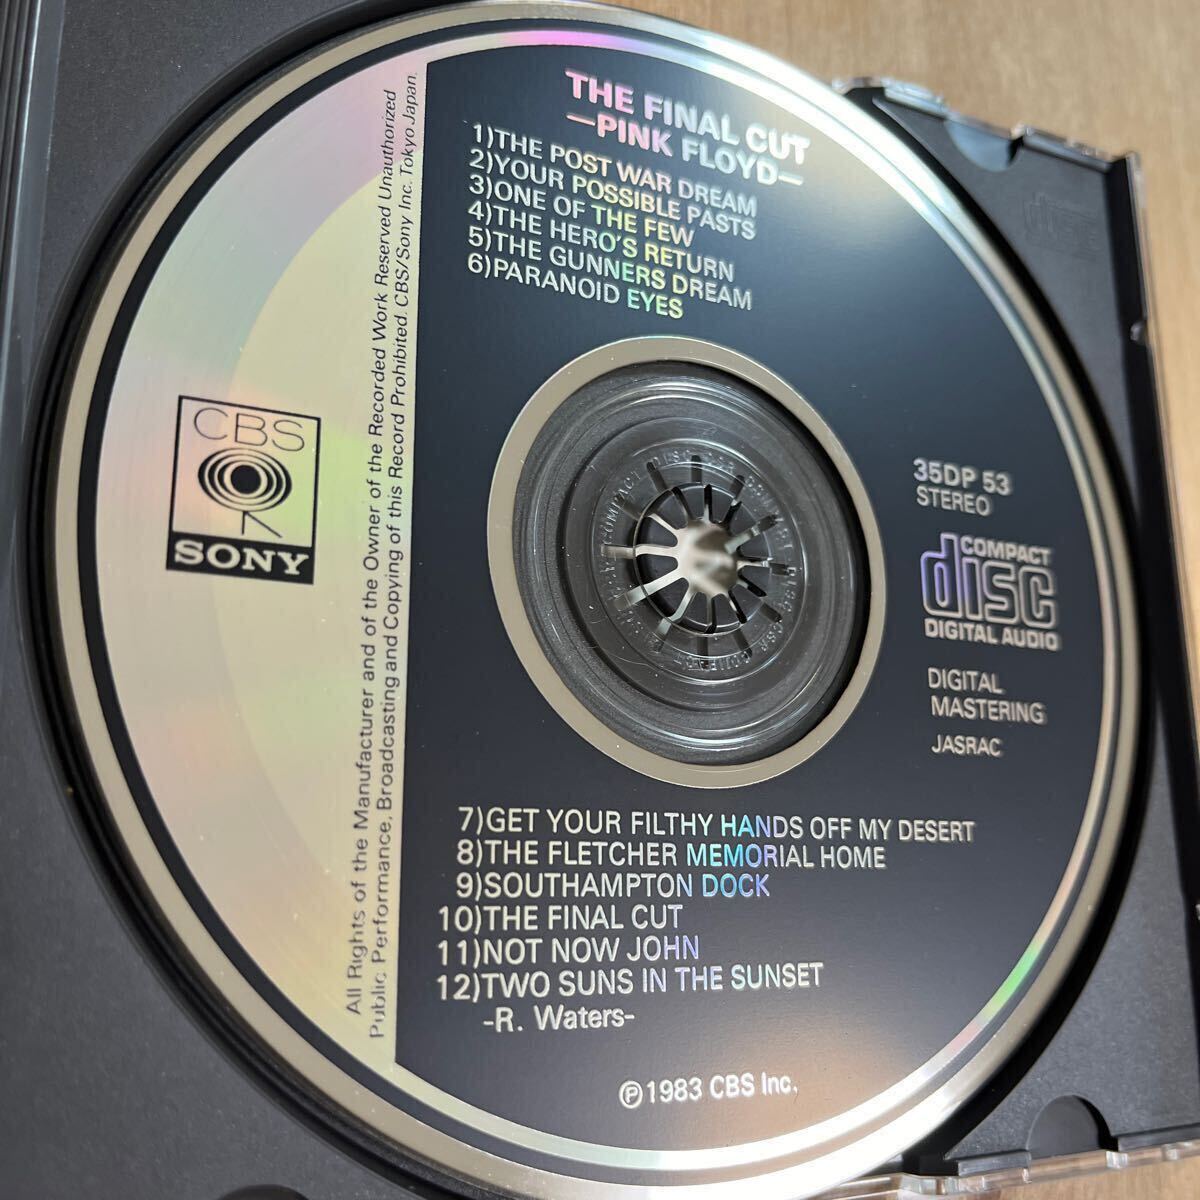 【 旧規格 CSR刻印 35DP -53 】 ピンク・フロイド / ファイナル・カット PINK FLOYD / THE FINAL CUT CBS SONY 国内初期3500円盤CD _画像3